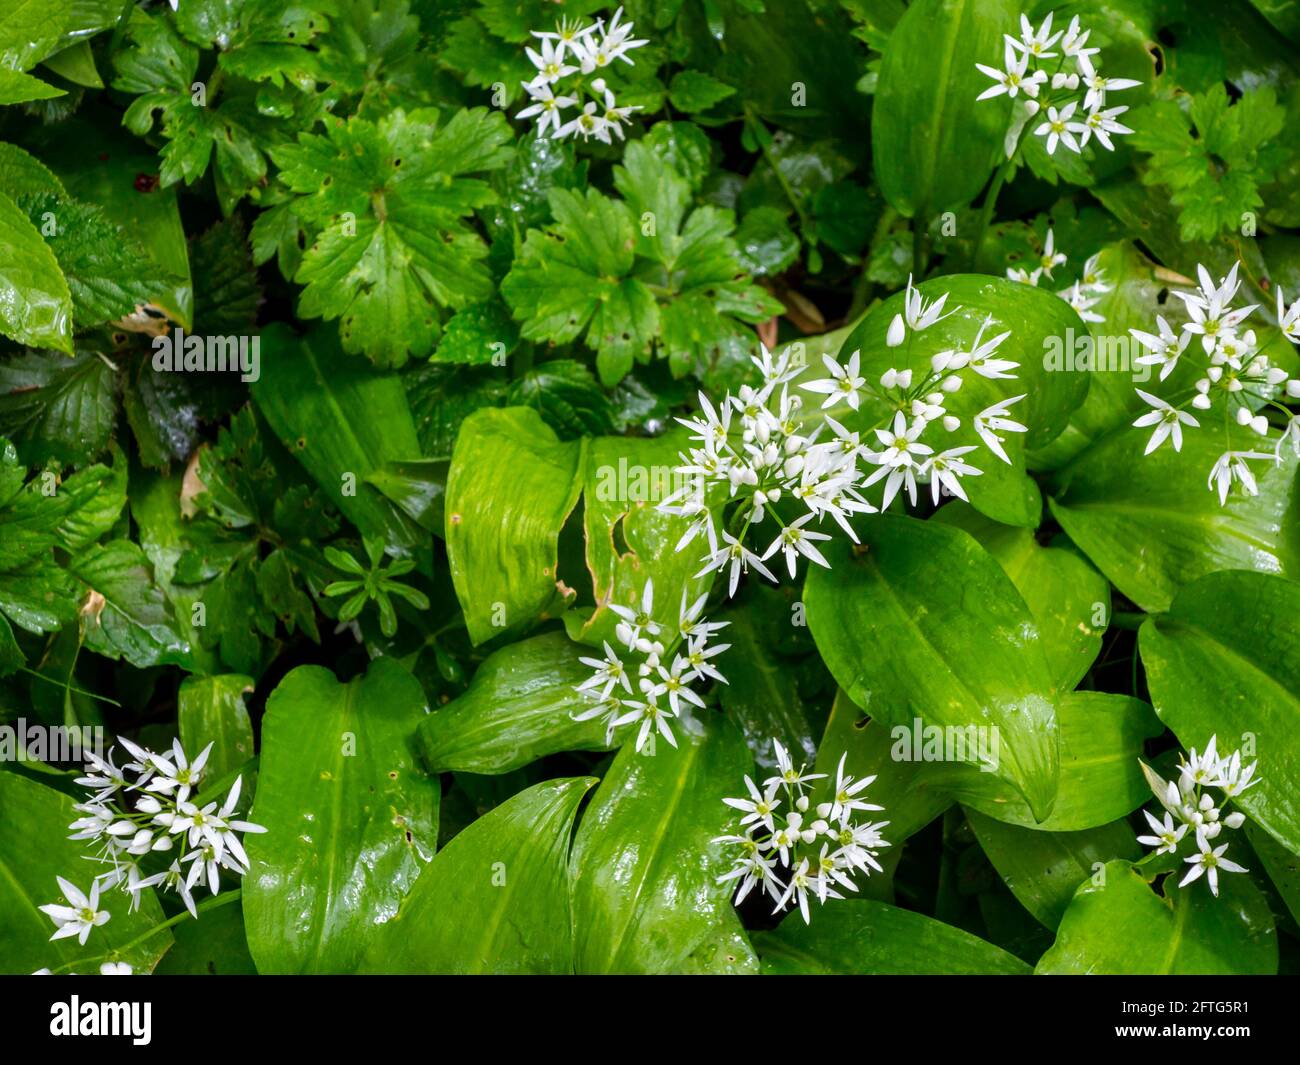 Allium ursinum, oder Bärlauch, Wildkauz, Ramsons, Buckrams, Breitblättriger Knoblauch, Holzknoblauchzehen, Bärlauch oder Bärlauch ist eine bauchige Staude. Stockfoto